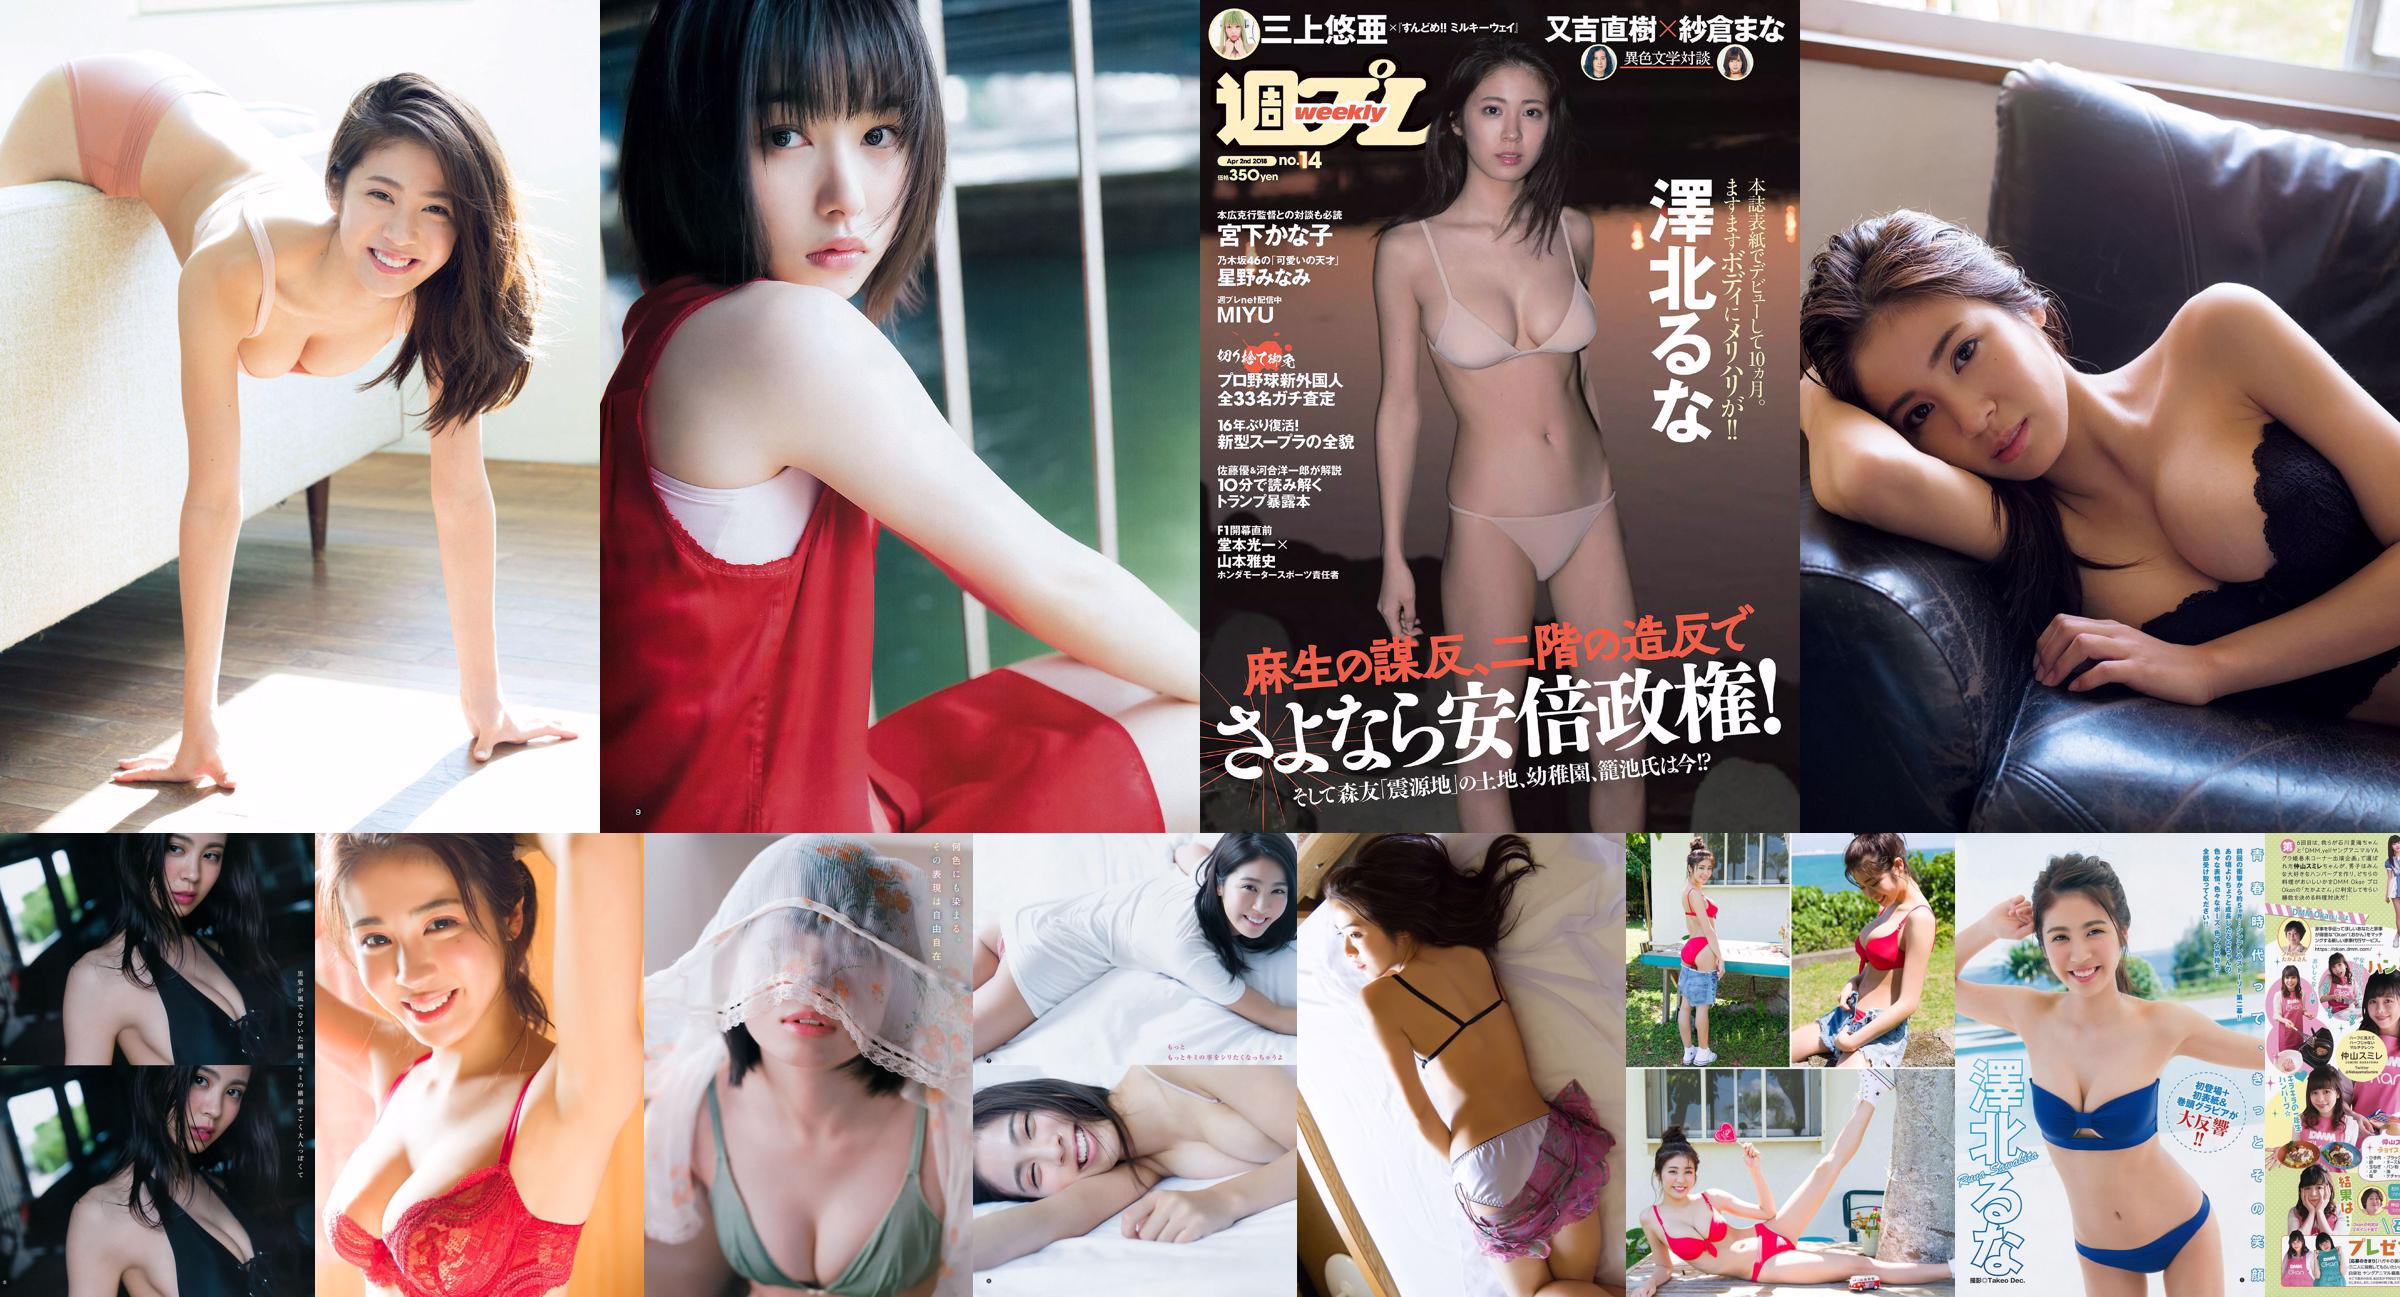 Luna Sawakita Minami Hoshino MIYU Kanako Miyashita Tsurugi Minami Kamei Nina Sakura [Playboy Semanal] 2018 Fotografia Nº 14 No.066b5a Página 1